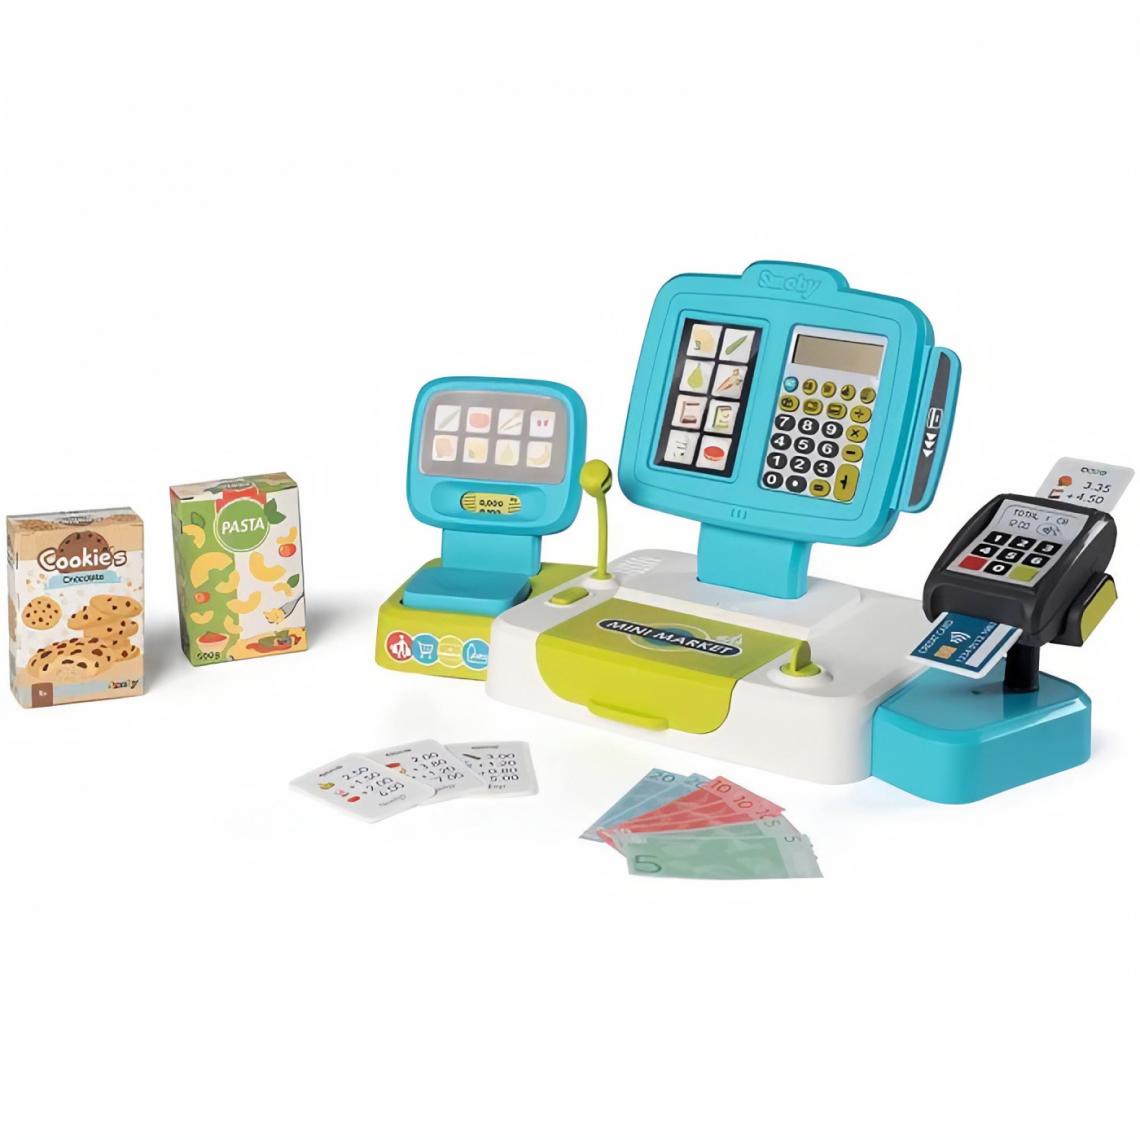 Smoby - Smoby Caisse enregistreuse jouet électronique avec balance - Cuisine et ménage